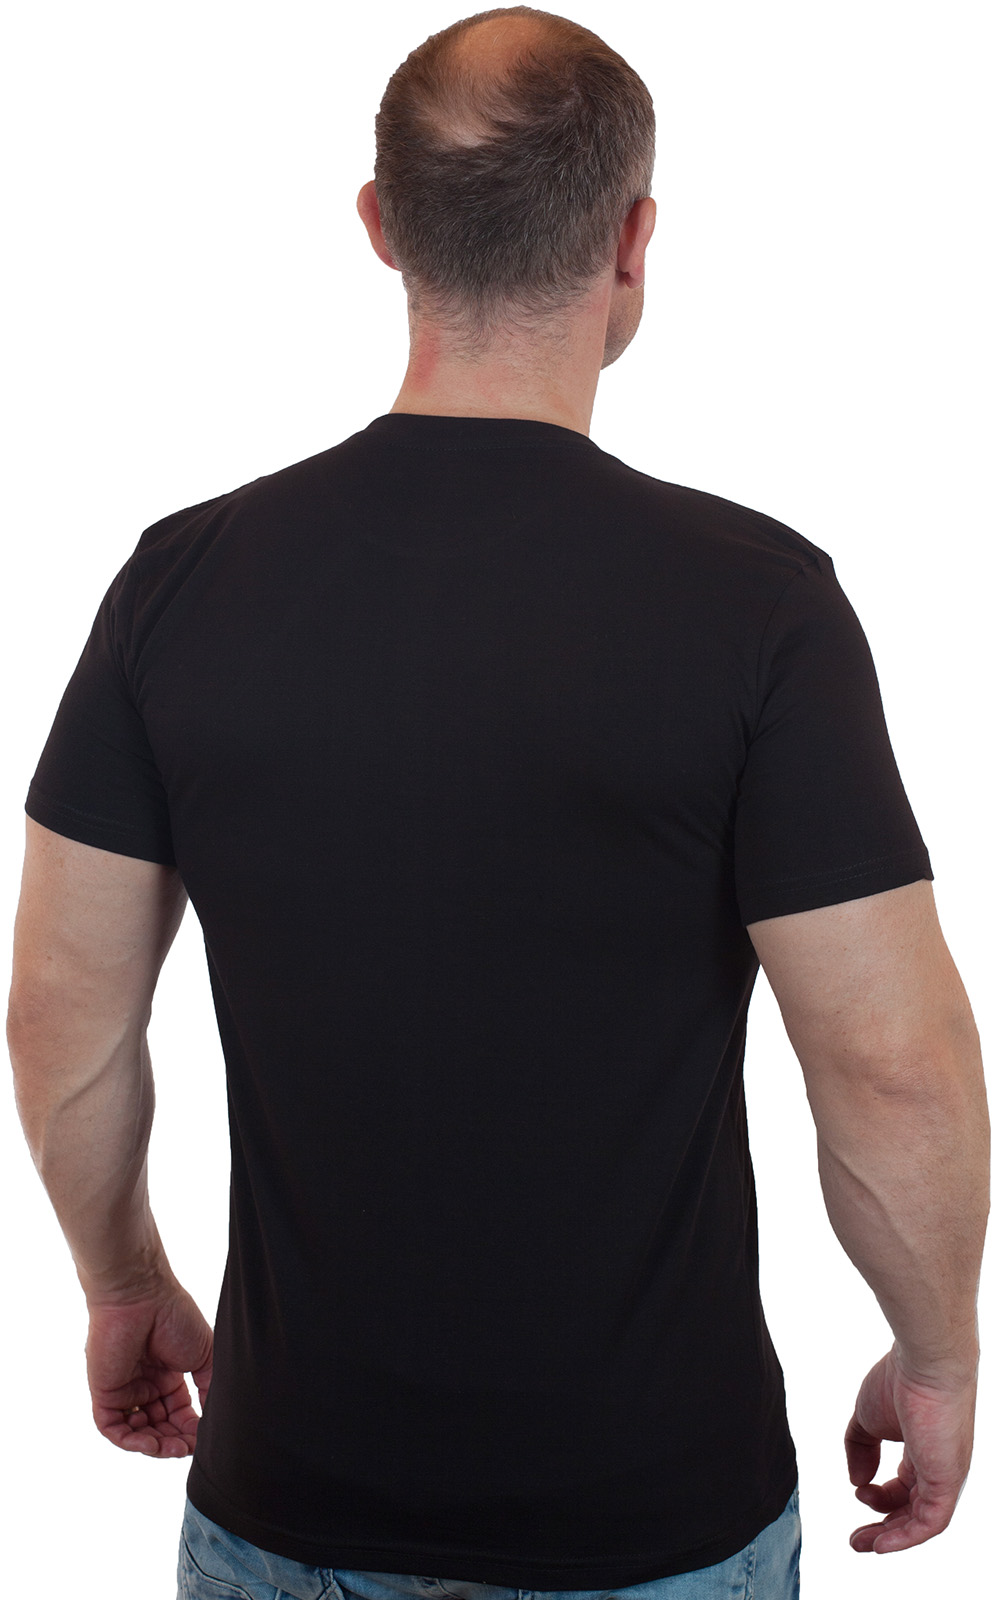 Недорогие футболки для современных мужчин – самые популярные фасоны и размеры